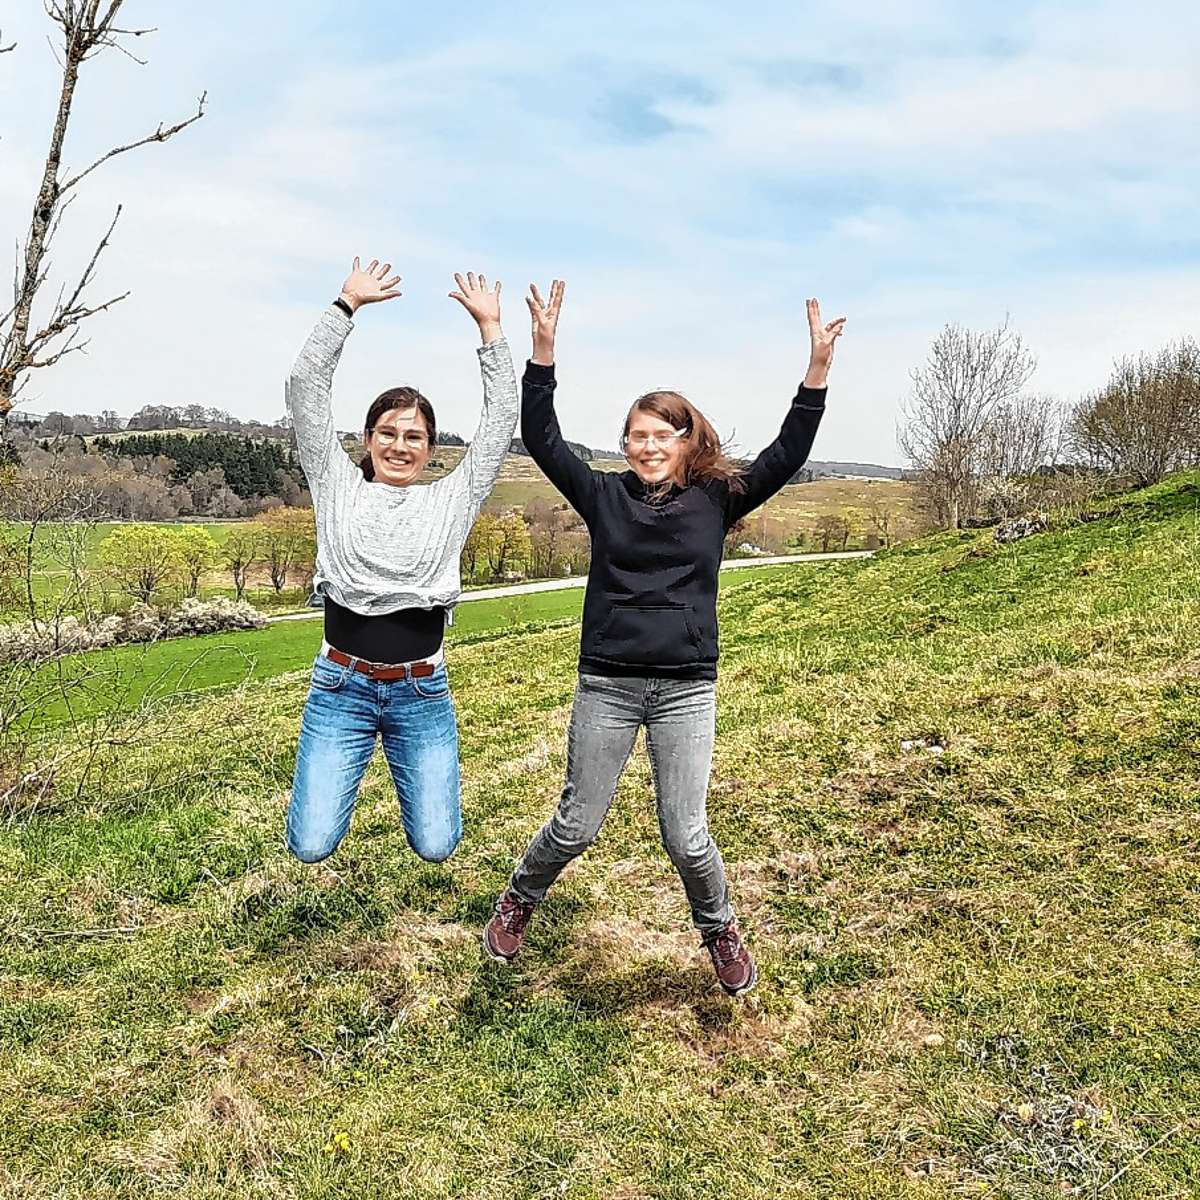 Die Initiatorinnen der Kleidertauschbörse, Lena Sophie Biskup und Elise Maier. Beide absolvieren ein freiwilliges ökologisches Jahr beim Biosphärengebiet Schwarzwald. Foto: zVg